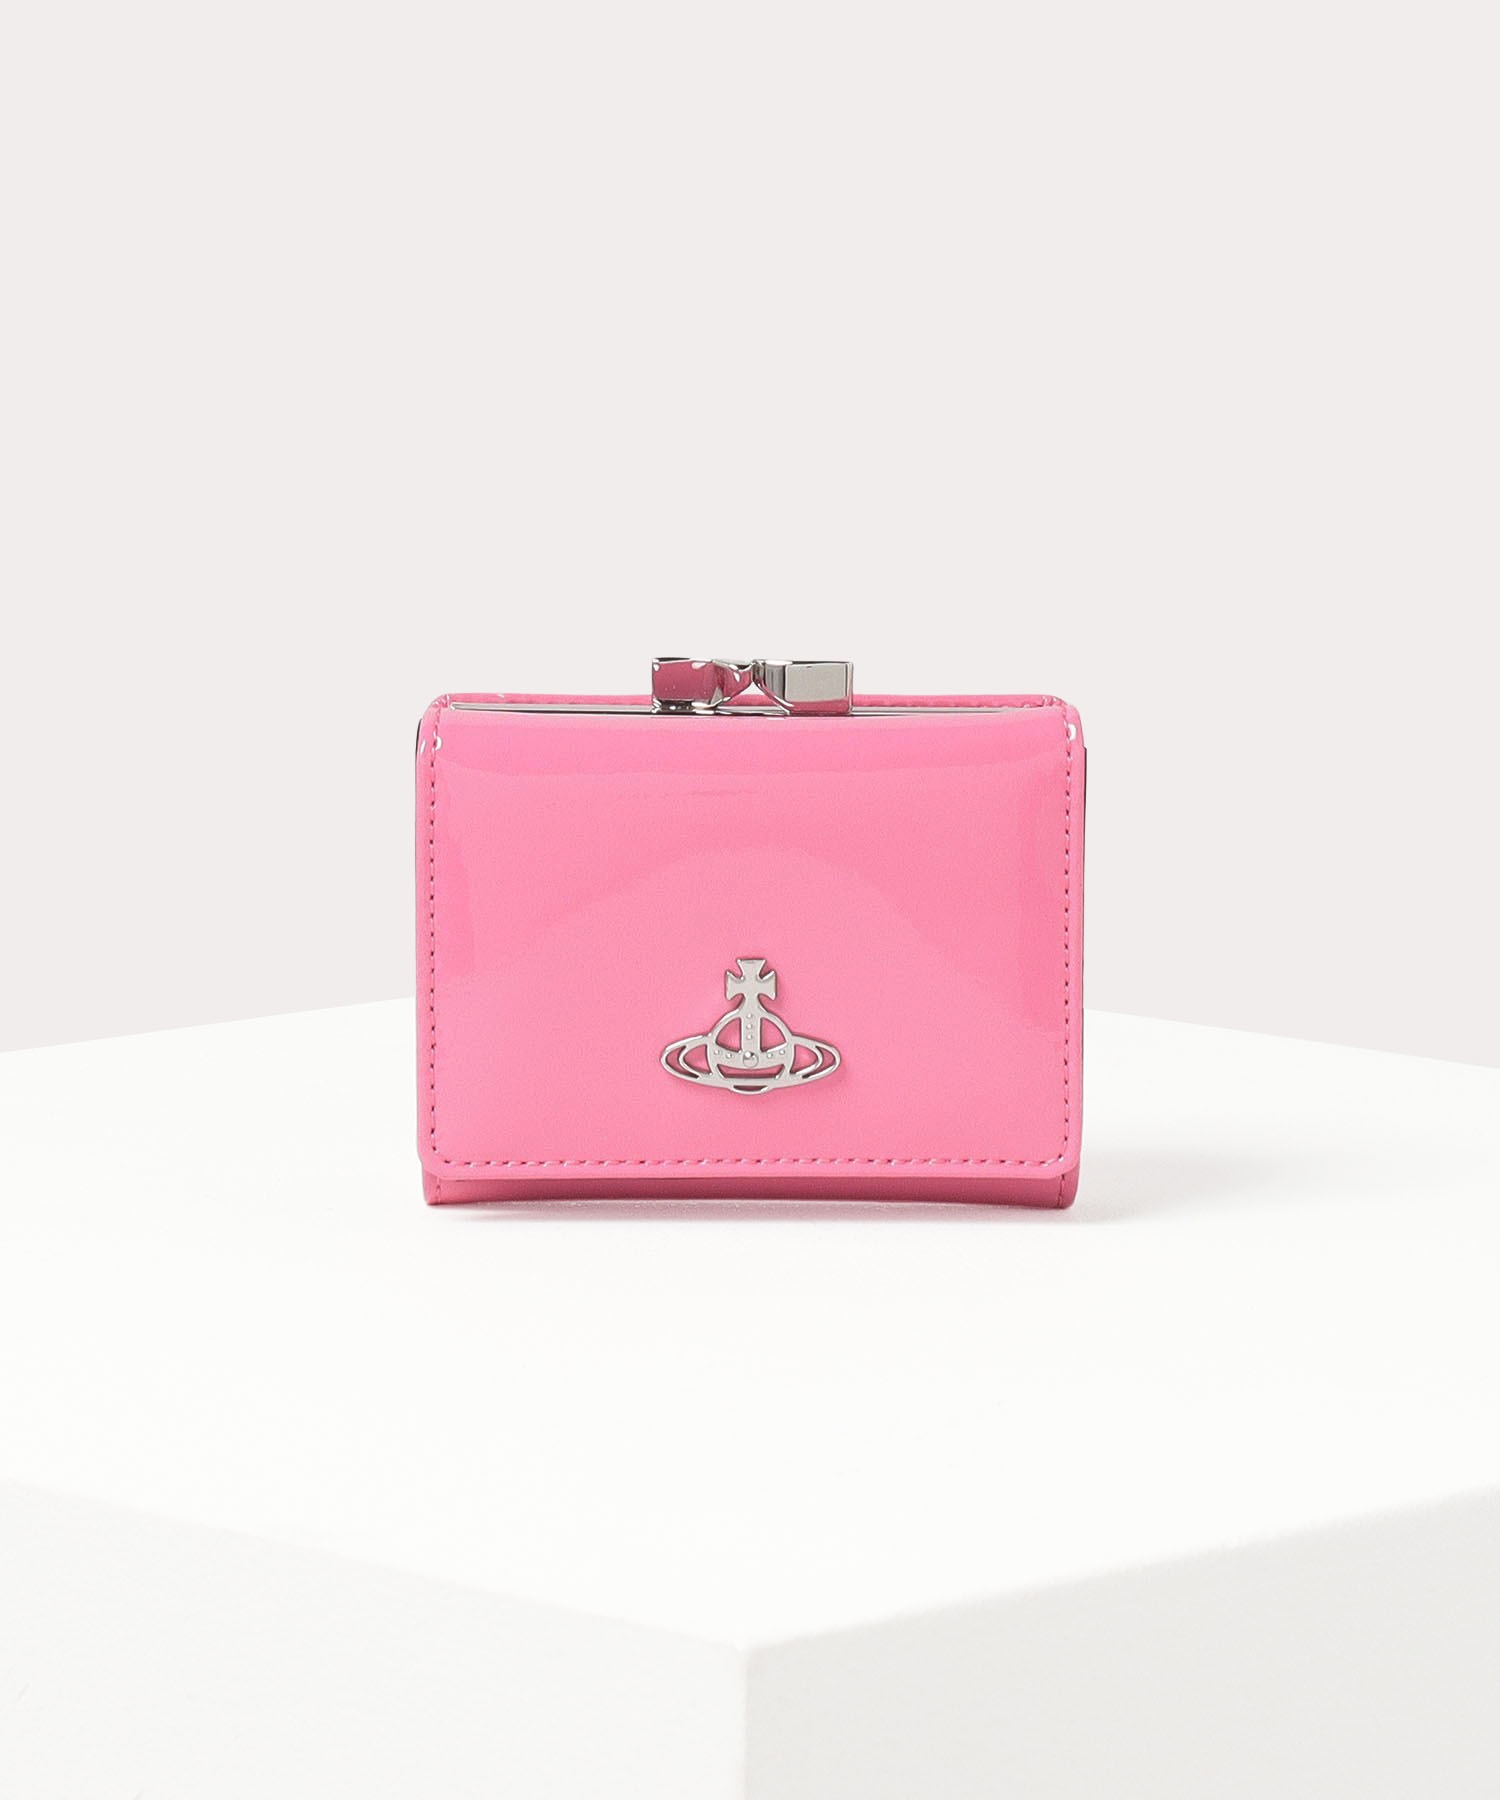 Vivienne Westwood 三つ折り財布 正規品 箱付き ピンク